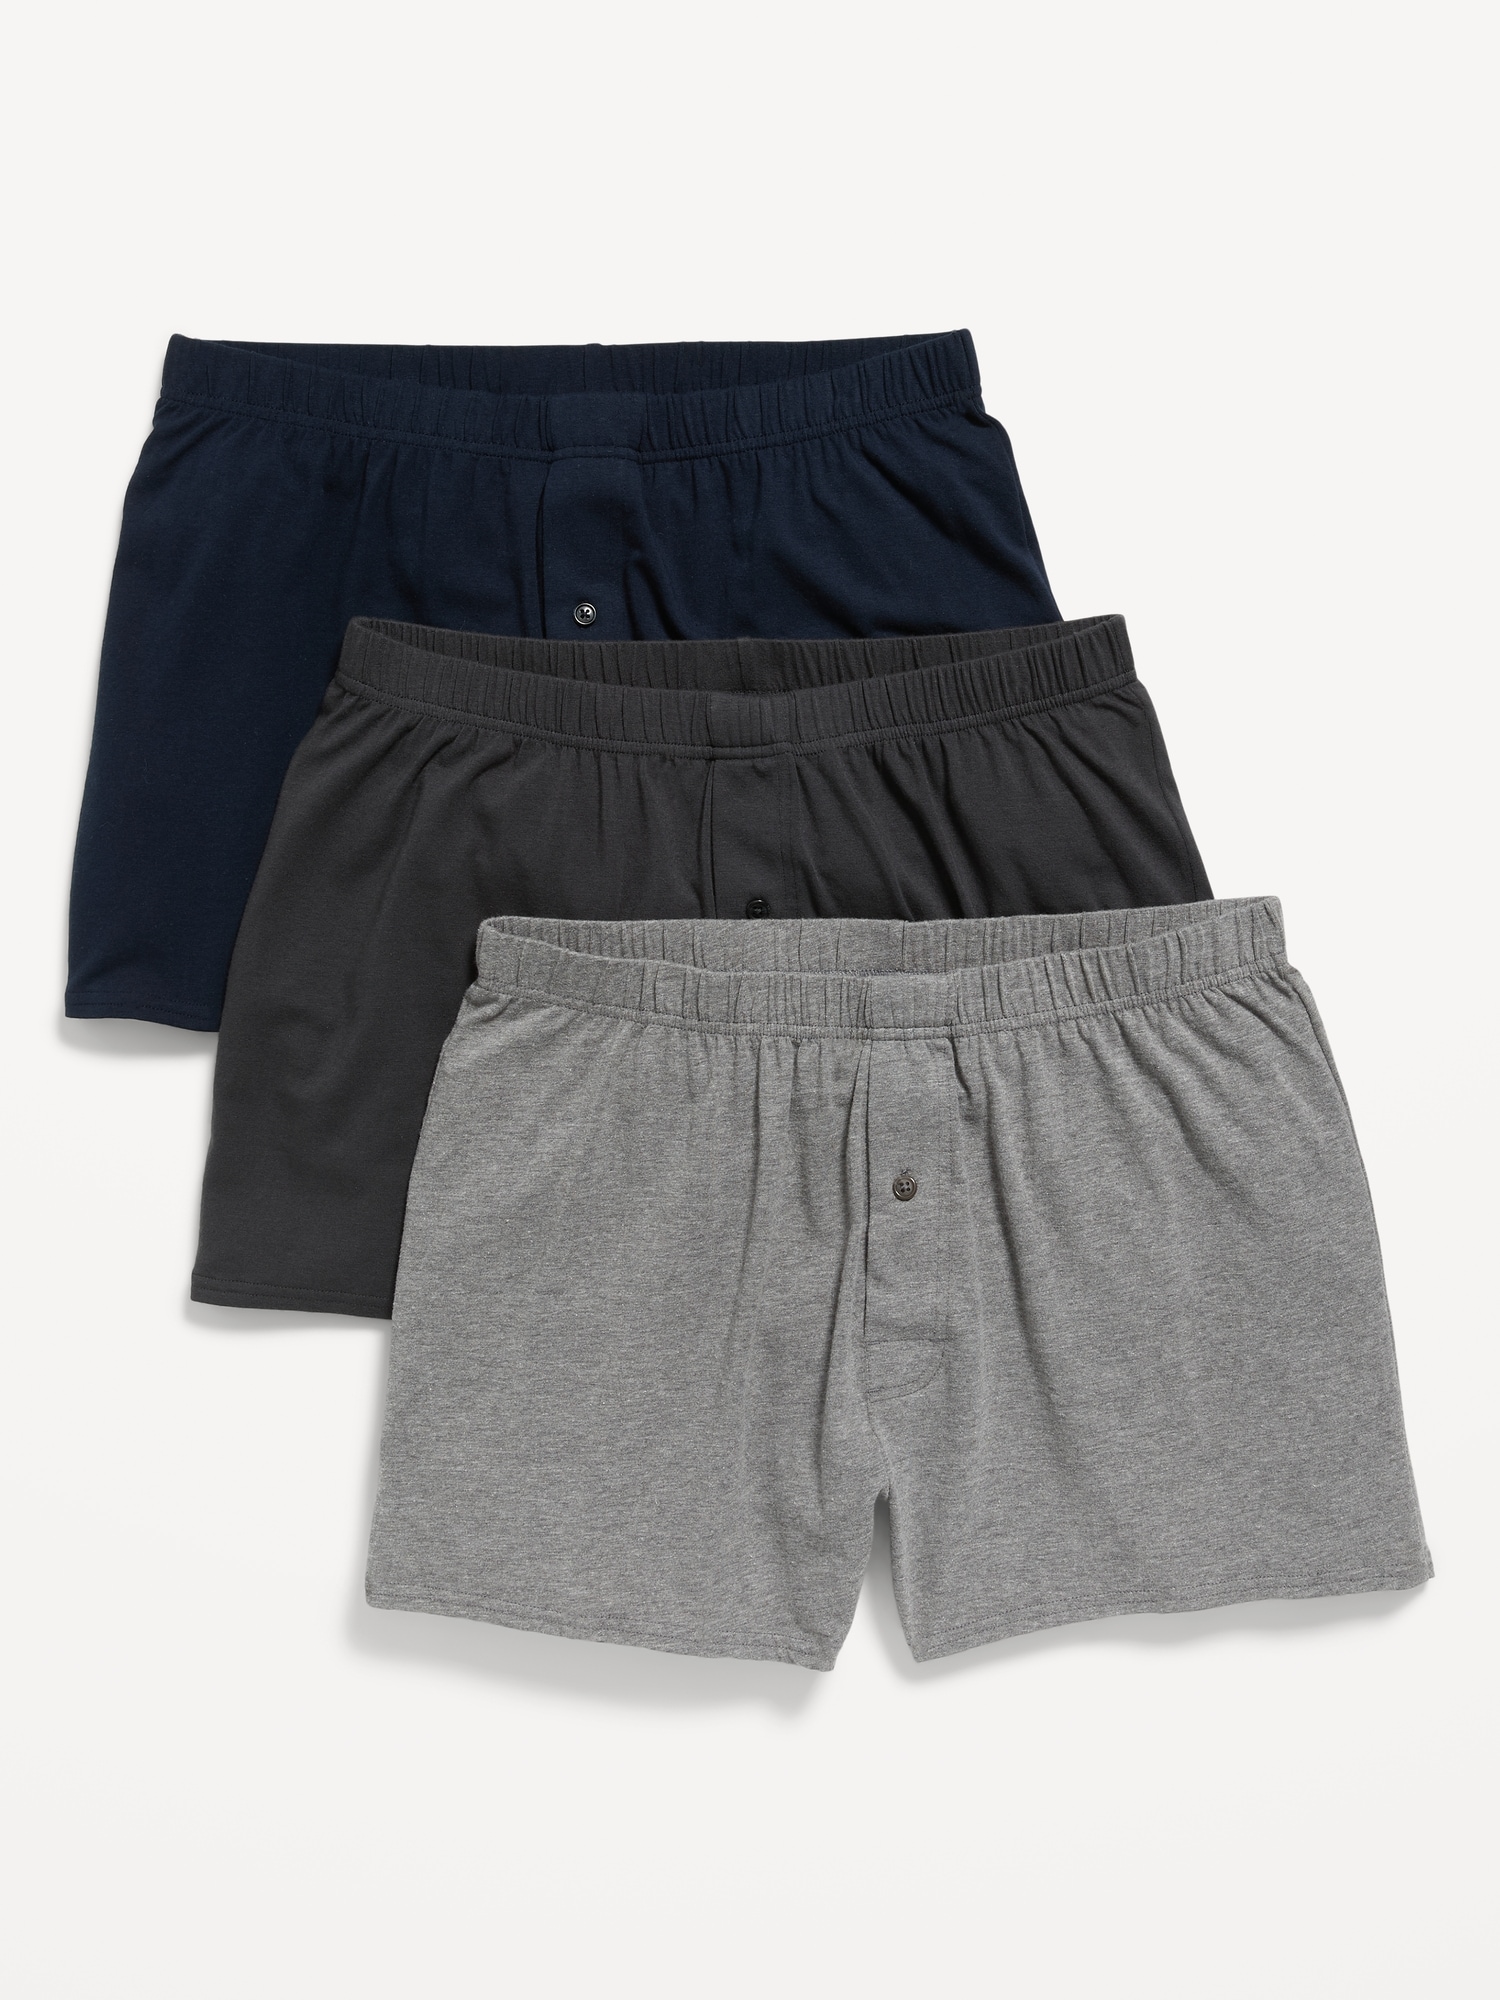 Solid Jersey-Knit Boxer-Brief Underwear 3-Pack--6.25-inch inseam | Old Navy